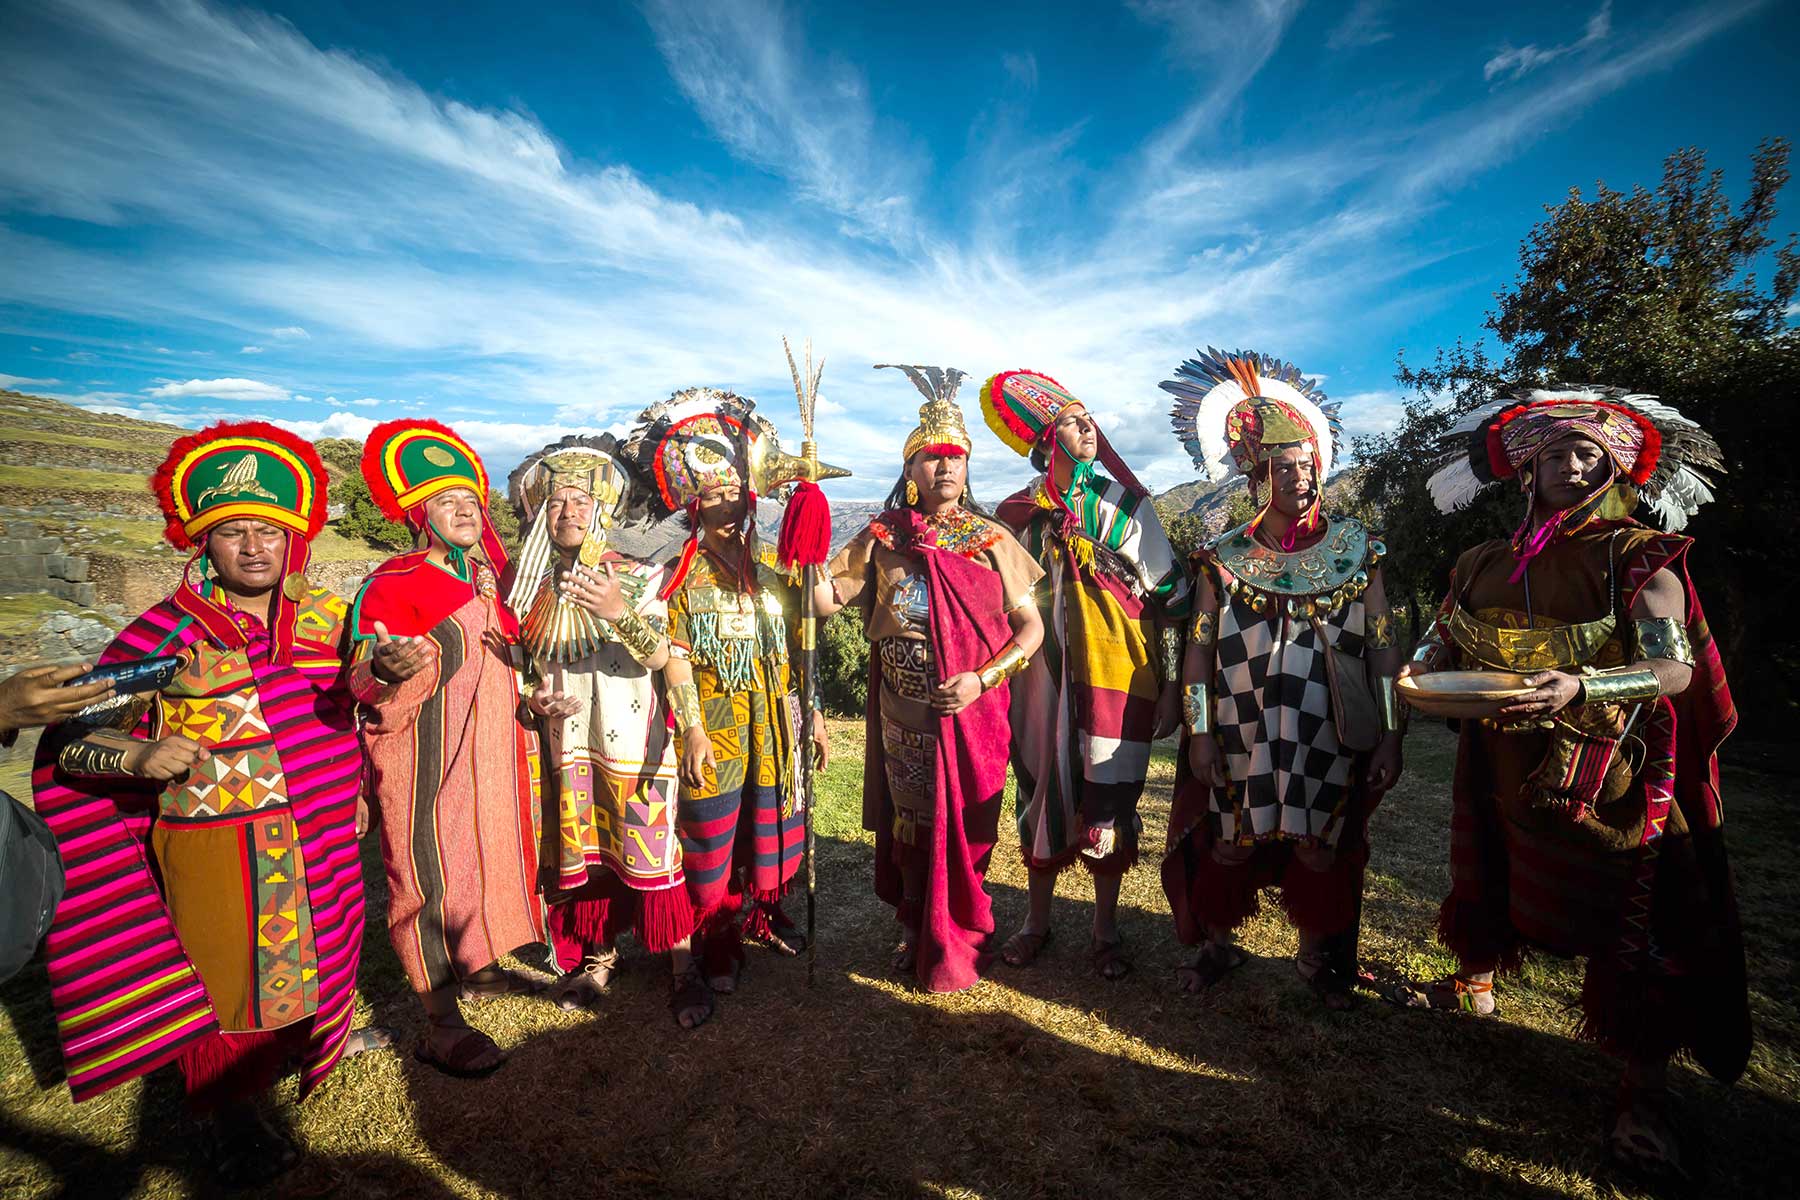 El inca deja un mensaje de unidad e integración a los miles de asistentes a una de las festividades más emblemáticas del Cusco.